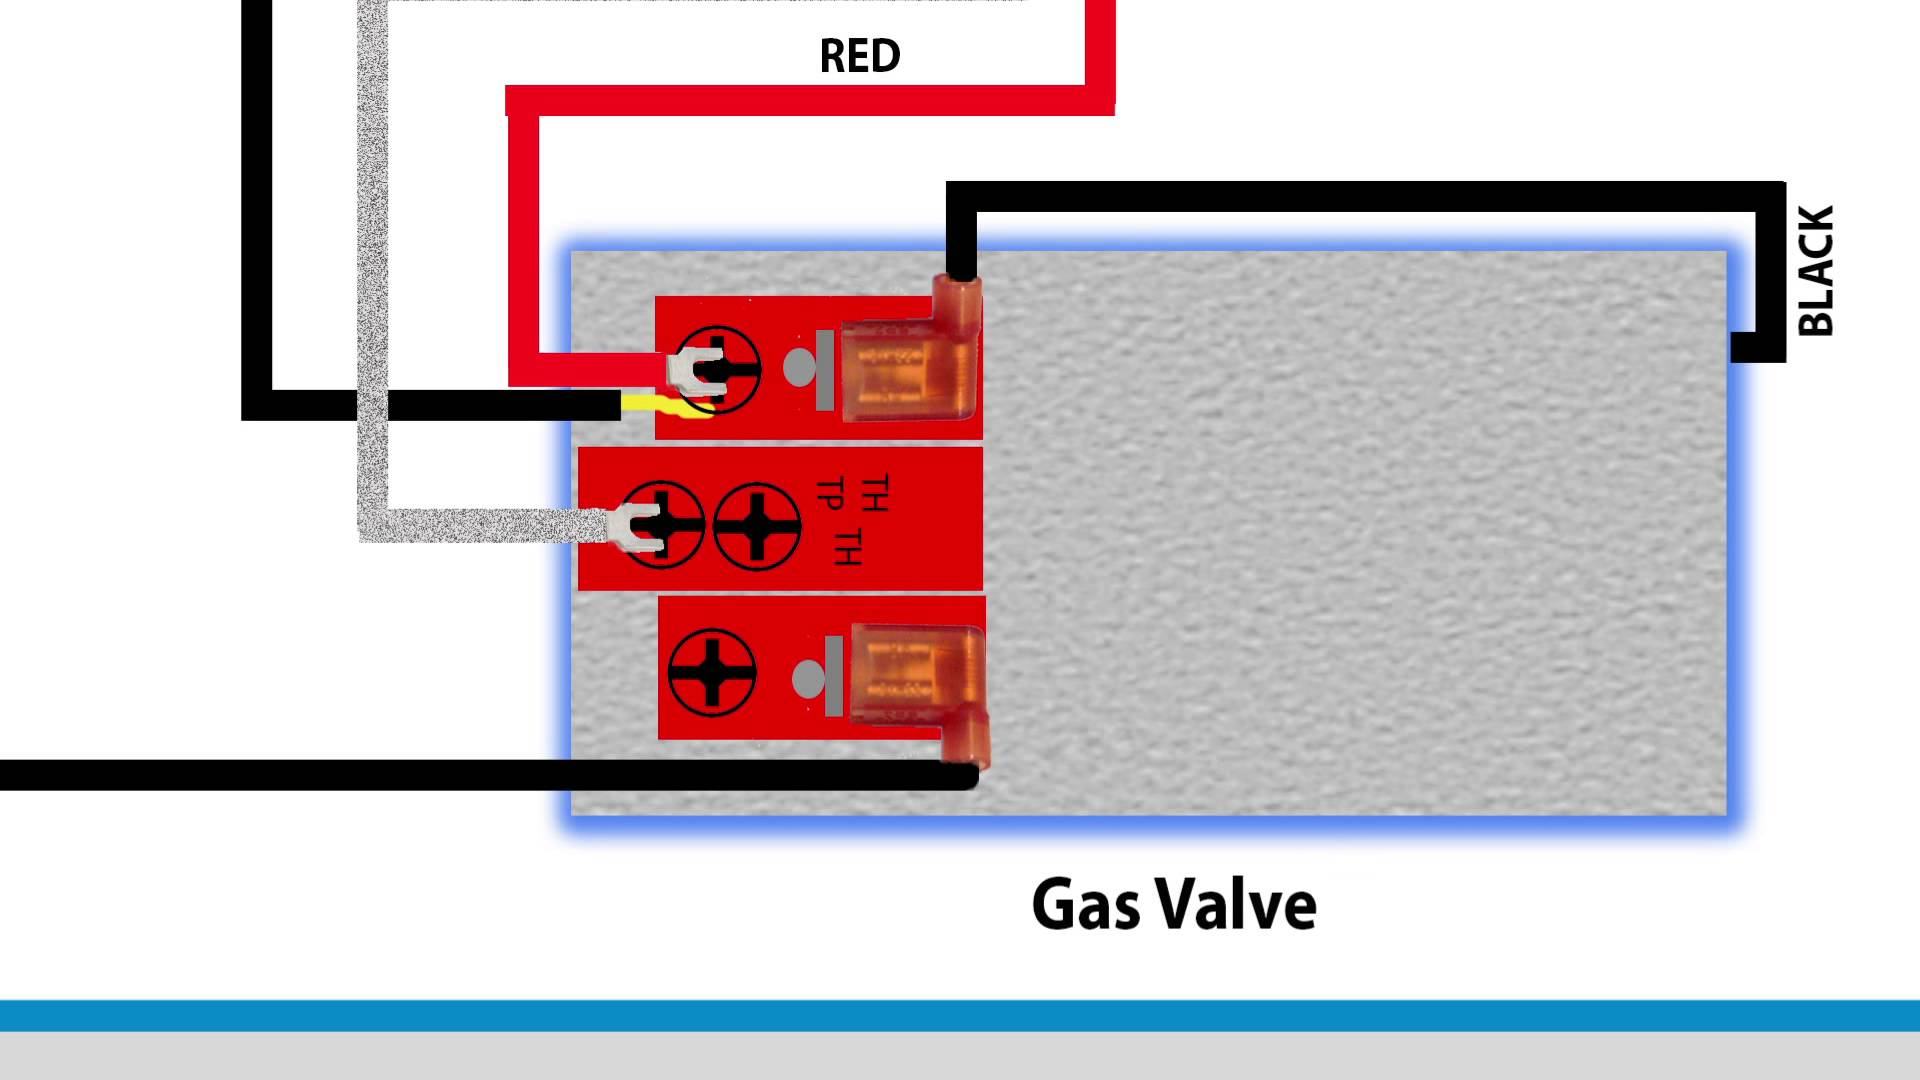 Coleman Floor Furnace Gas Valve - Carpet Vidalondon dayton hanging furnace wiring diagram 